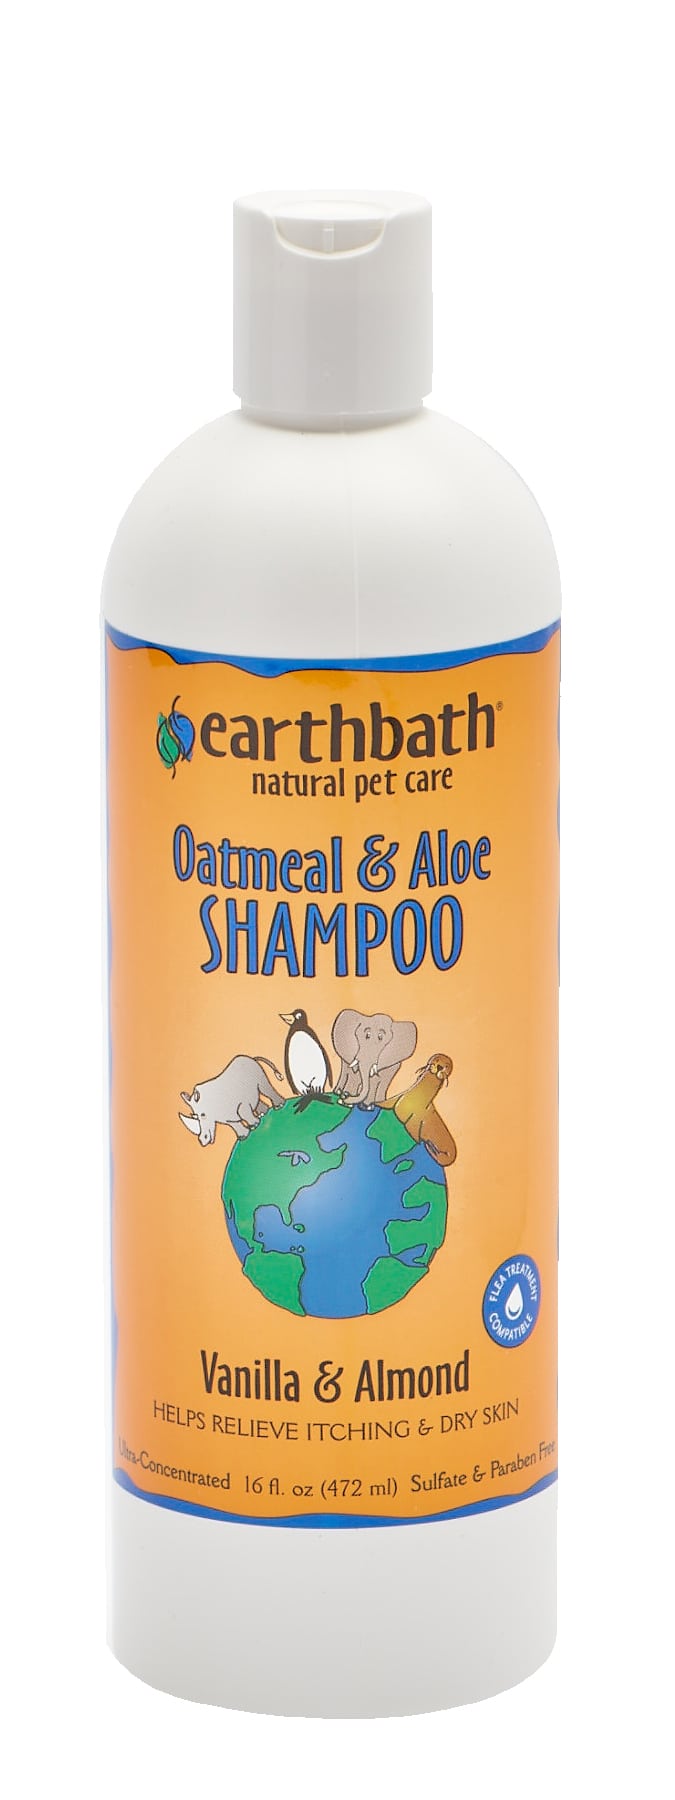 Earthbath 472ml Oatmeal & Aloe Shampoo Vanilla & Almond